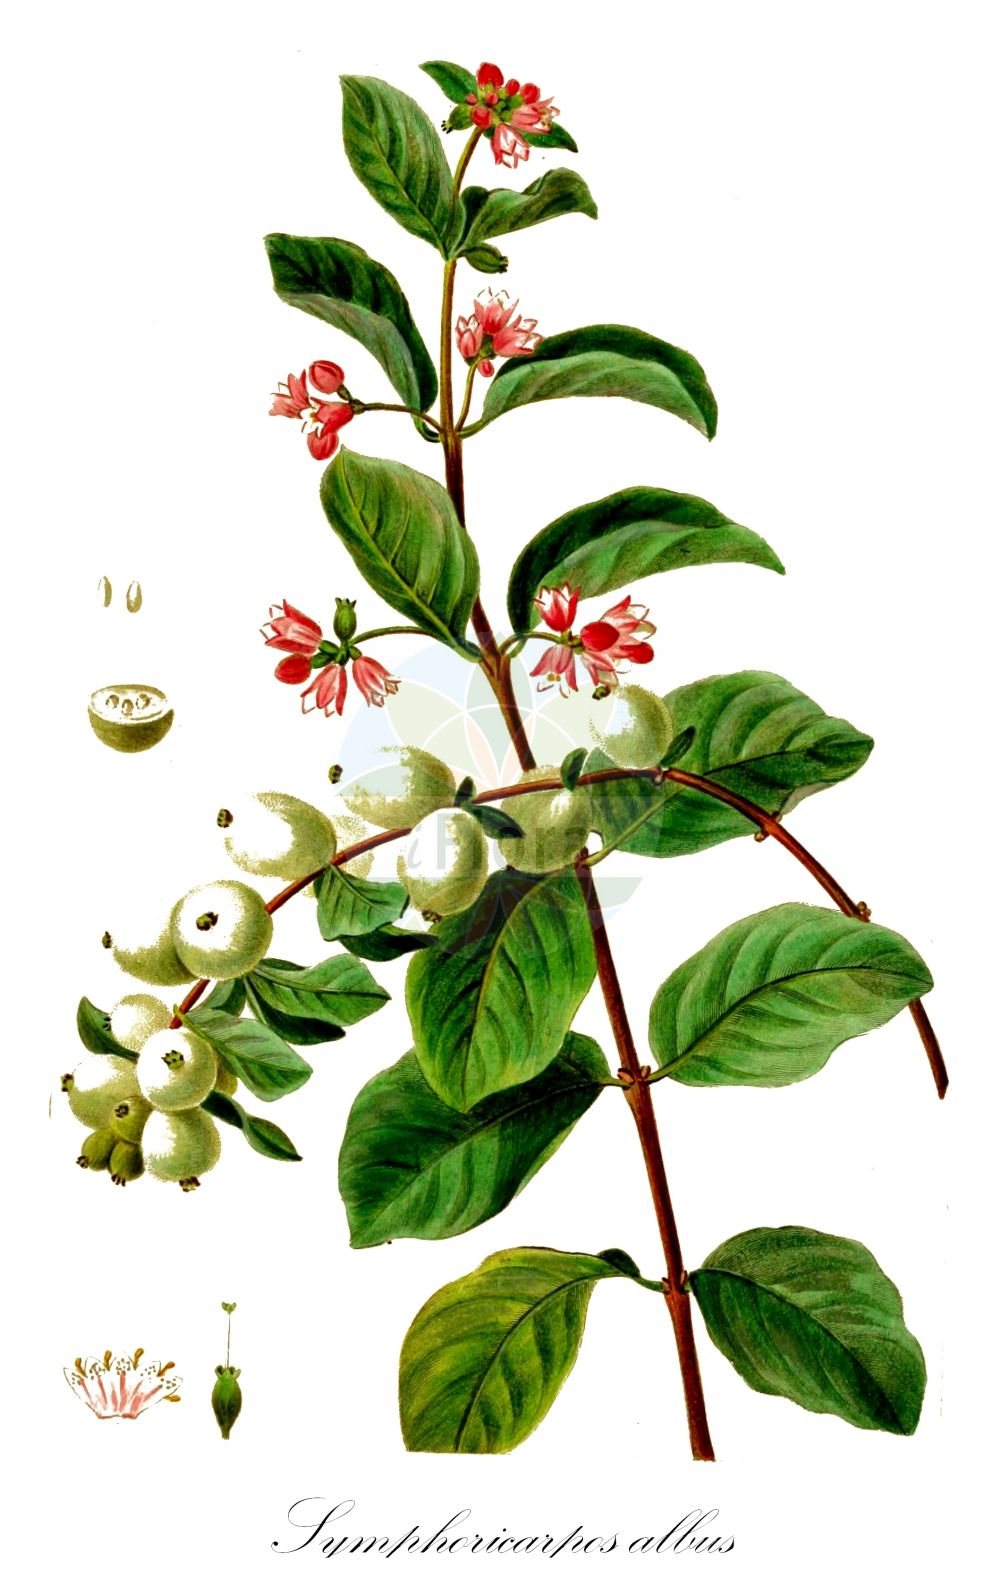 Historische Abbildung von Symphoricarpos albus (Gewöhnliche Schneebeere - Snowberry). Das Bild zeigt Blatt, Bluete, Frucht und Same. ---- Historical Drawing of Symphoricarpos albus (Gewöhnliche Schneebeere - Snowberry). The image is showing leaf, flower, fruit and seed.(Symphoricarpos albus,Gewöhnliche Schneebeere,Snowberry,Symphoricarpos albus,Symphoricarpos racemosus,Symphoricarpos rivularis,Vaccinium album,Gewoehnliche Schneebeere,Knackbeere,Knallerbse,Snowberry,Common Snowberry,Symphoricarpos,Schneebeere,Snowberry,Caprifoliaceae,Geißblattgewächse,Honeysuckle family,Blatt,Bluete,Frucht,Same,leaf,flower,fruit,seed)